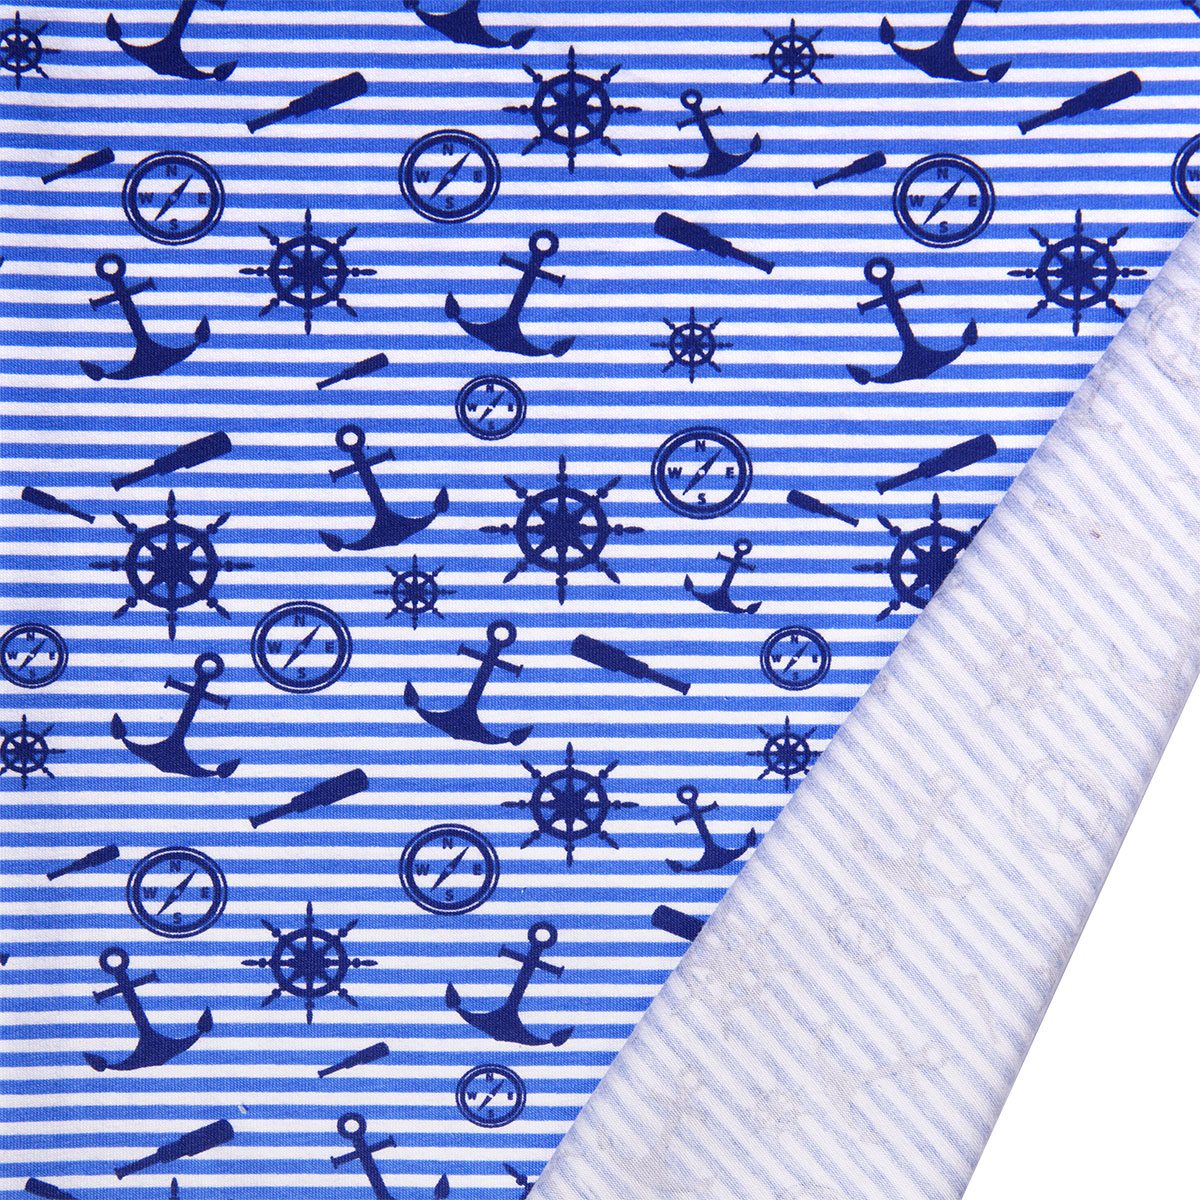 Dekostoff Lilly OC Maritim blau weiß gestreift in 1,6m Breite (METERWARE) Baumwollstoff Stoff aus 95% Bio-Baumwolle